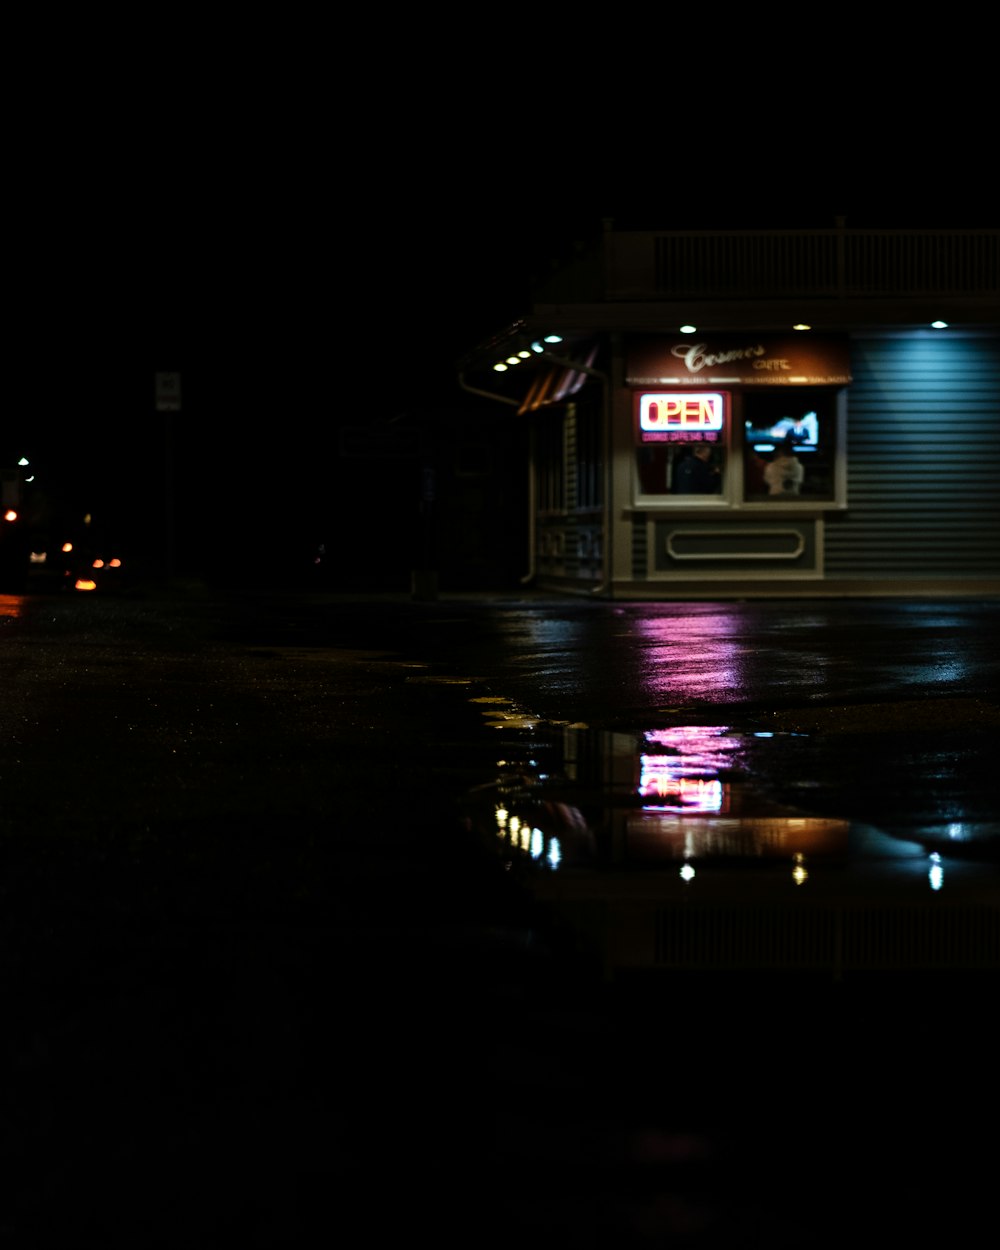 Ein Geschäft im Dunkeln und eine Pfütze, die die Neonlichter aus dem Schaufenster reflektiert